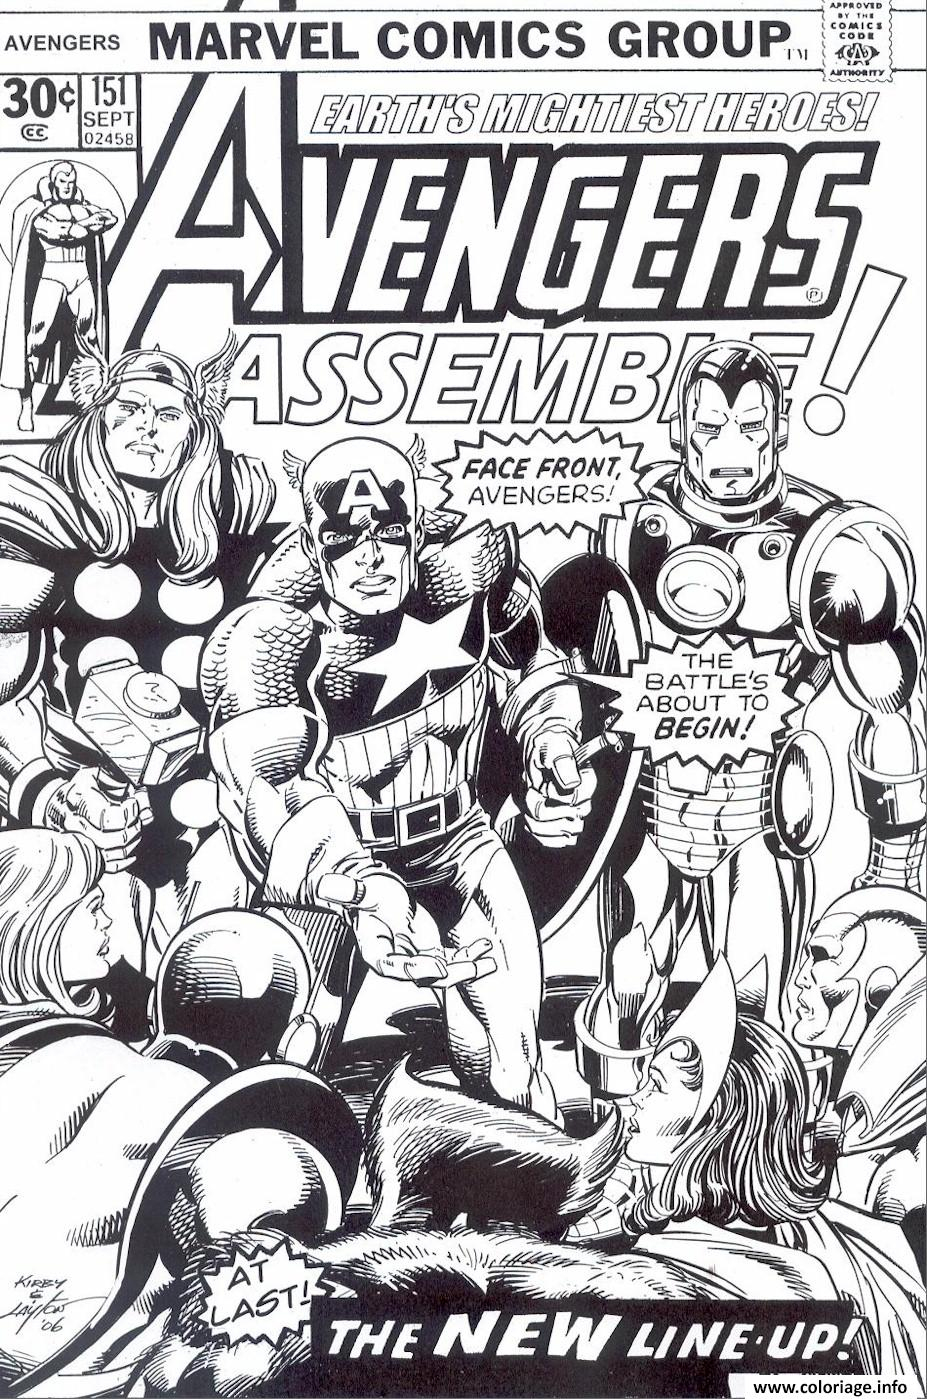 Coloriage Avengers Marvel Comics Cover - Jecolorie à Avengers Coloriage 